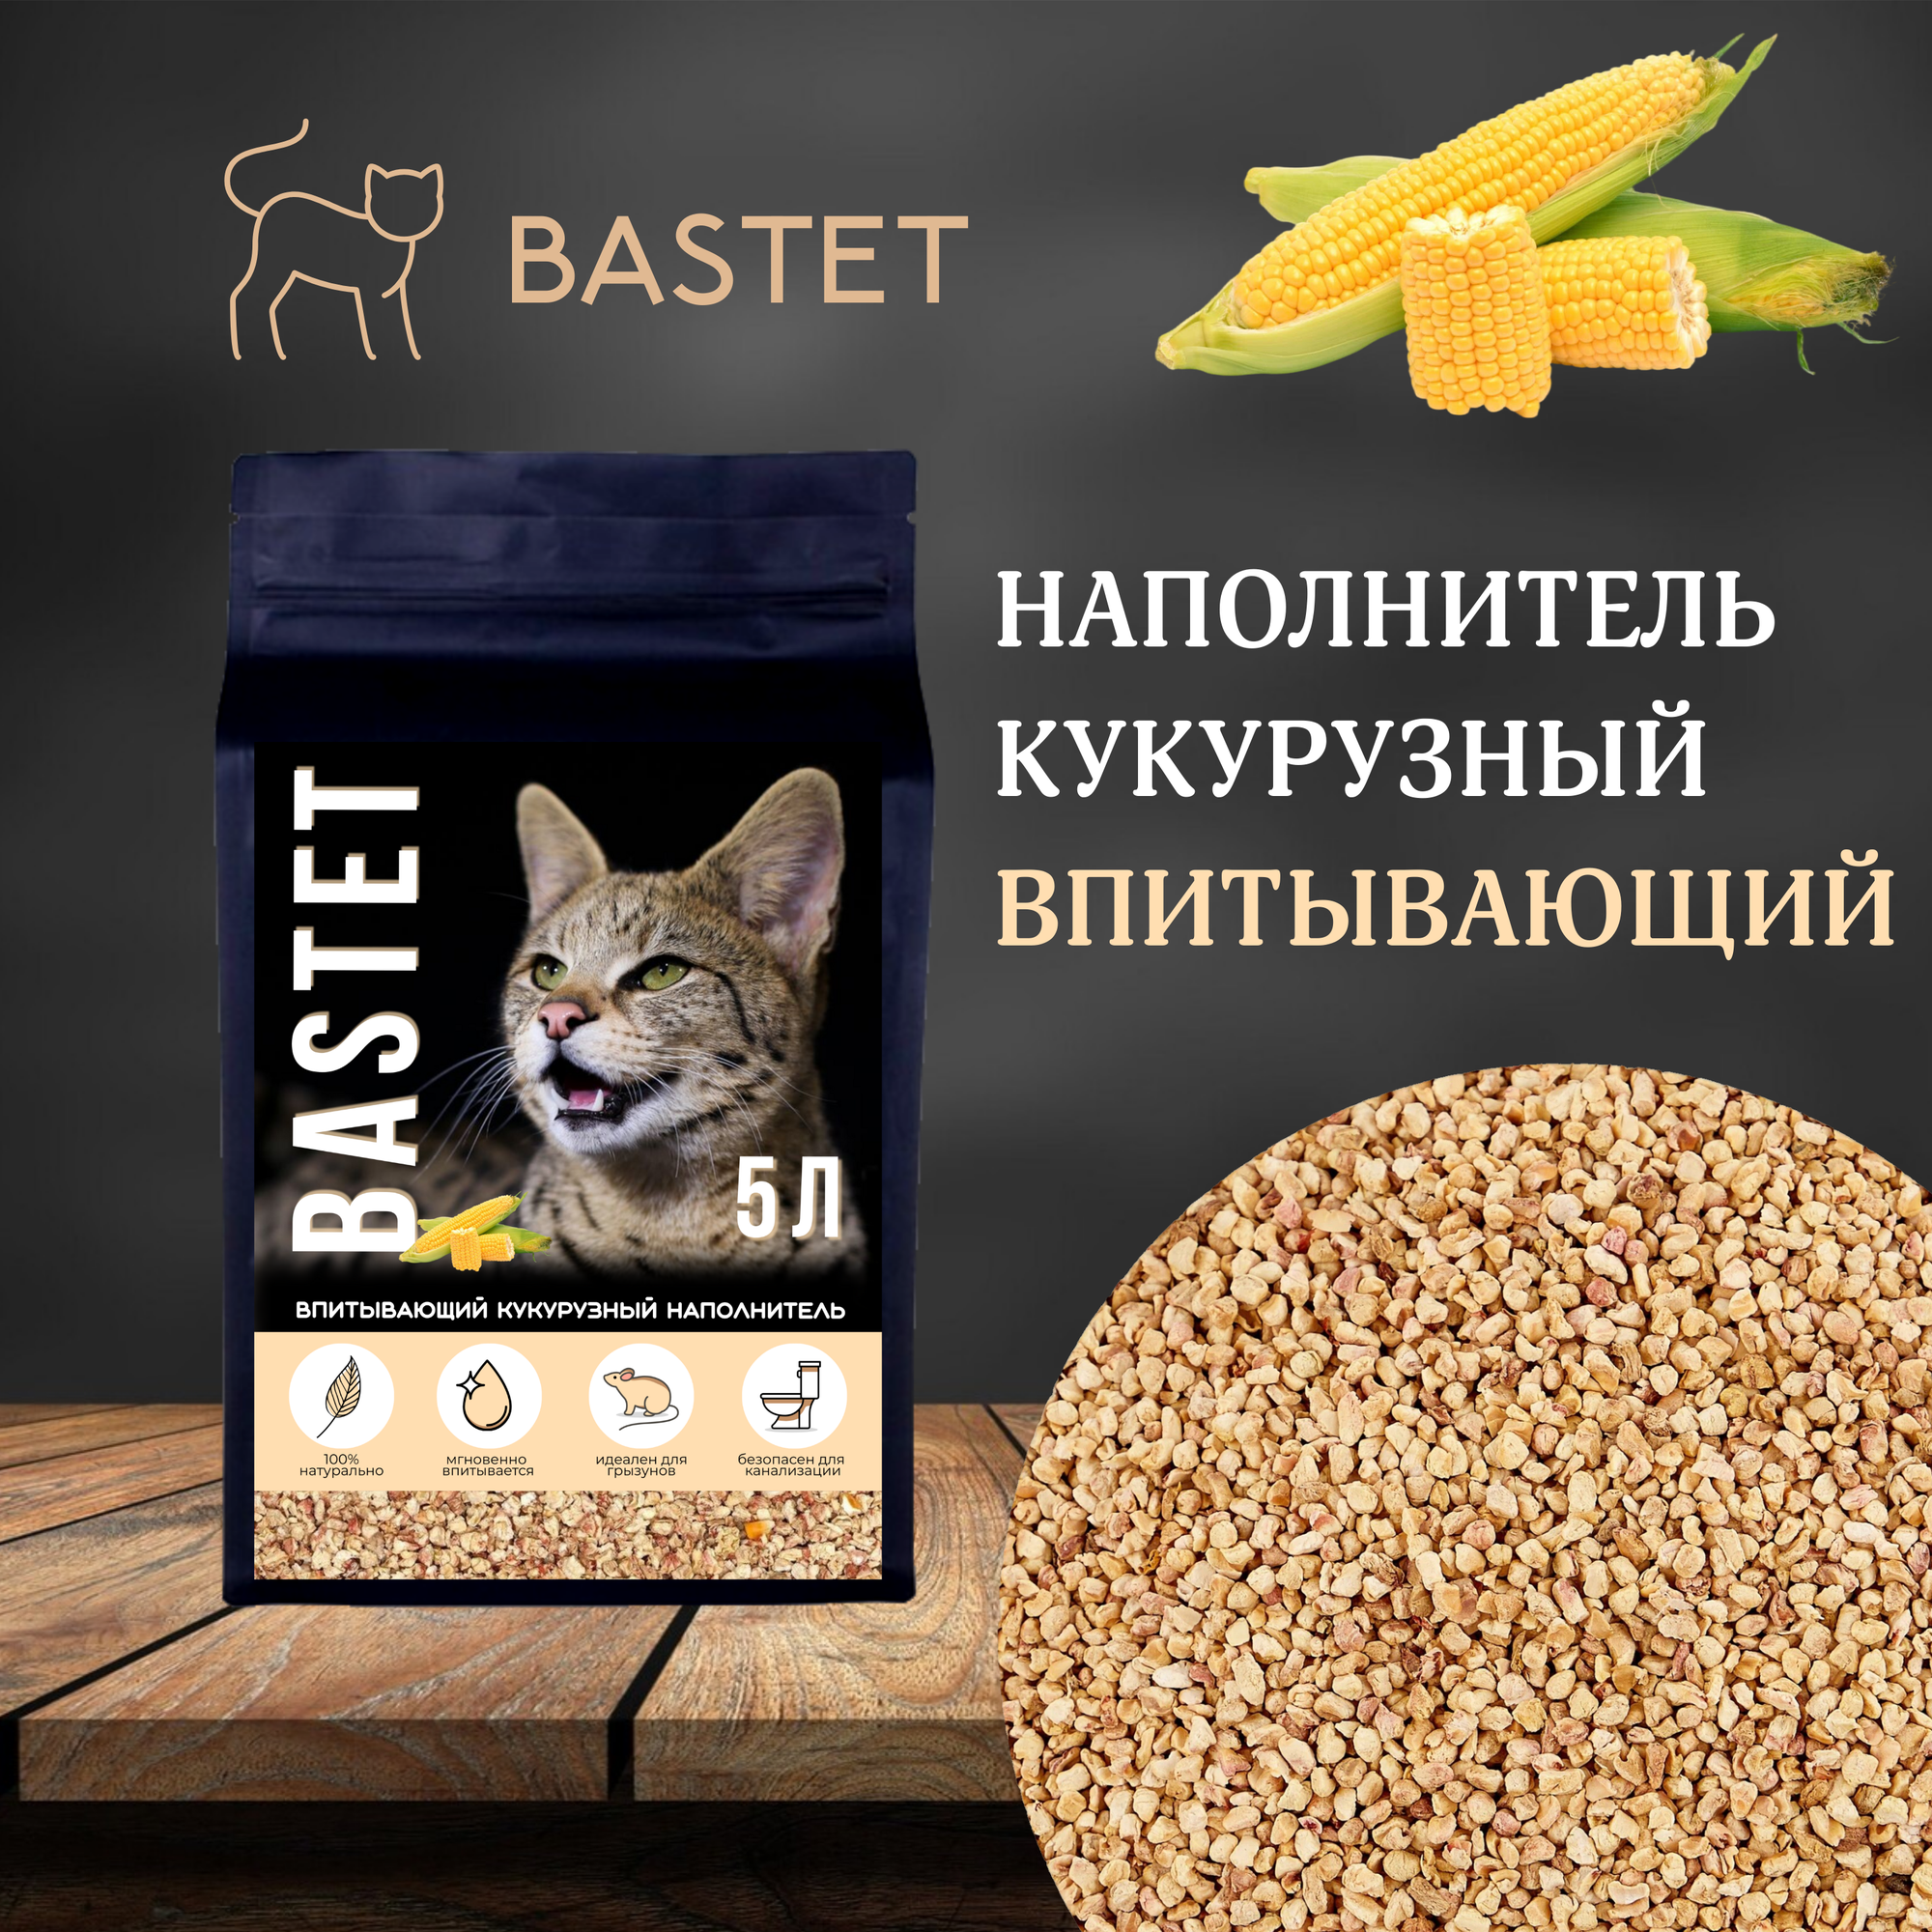 Наполнитель BASTET кукурузный впитывающий, 5 л